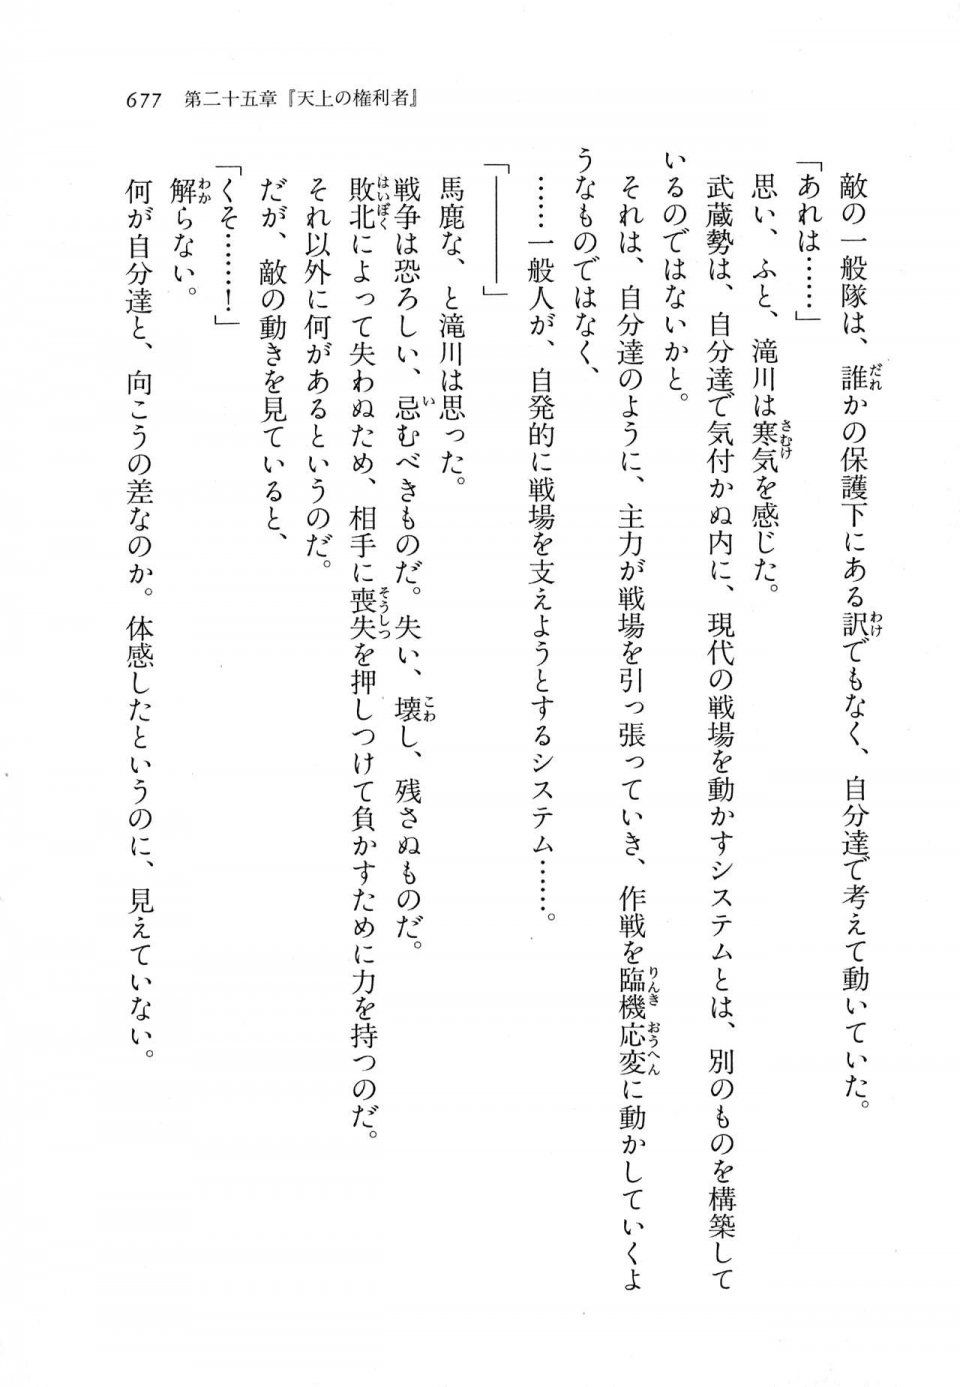 Kyoukai Senjou no Horizon LN Vol 11(5A) - Photo #677